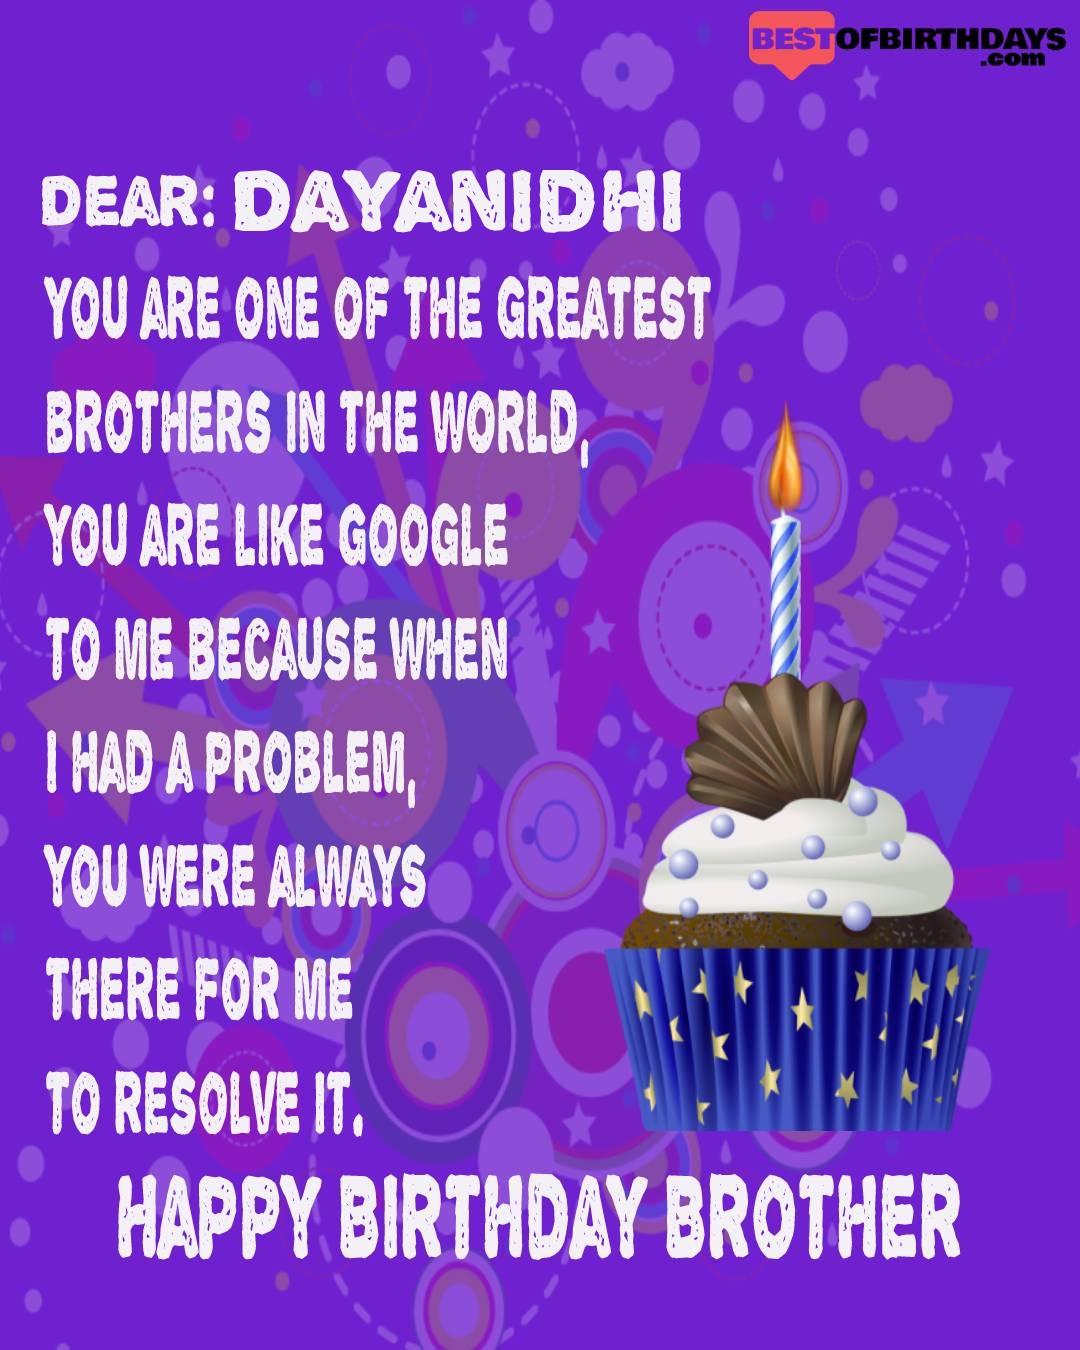 Happy birthday dayanidhi bhai brother bro